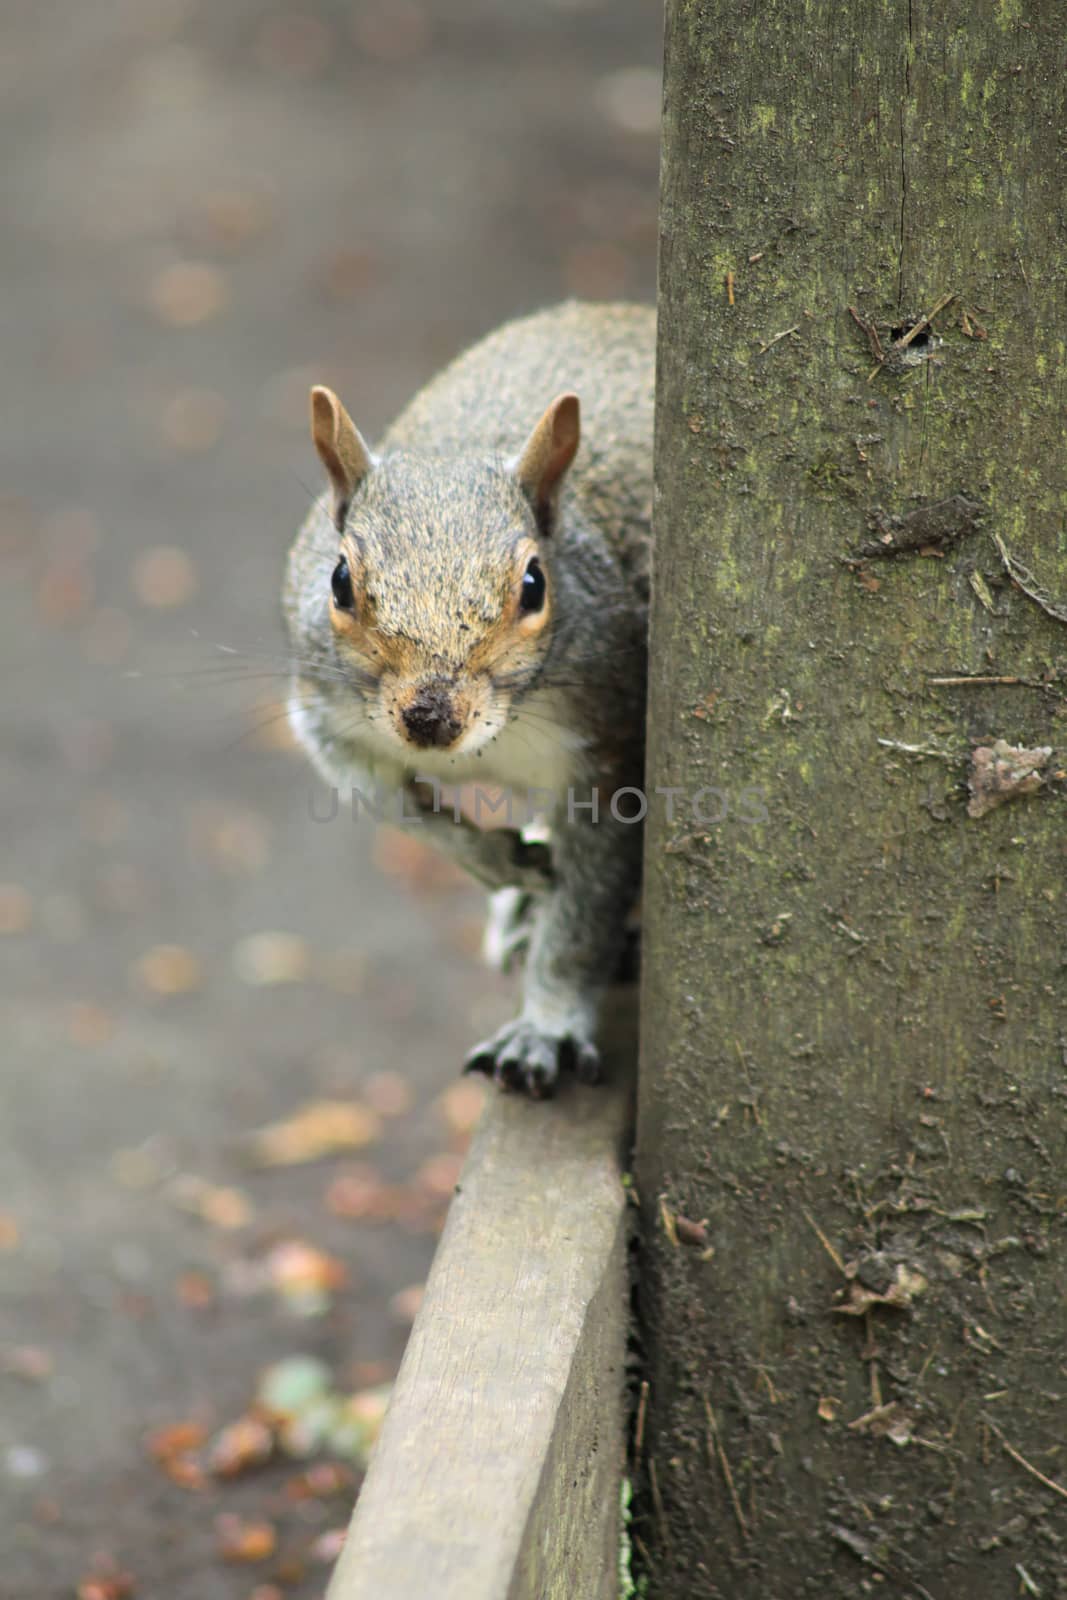 Squirrel on the curb by Kasia_Lawrynowicz